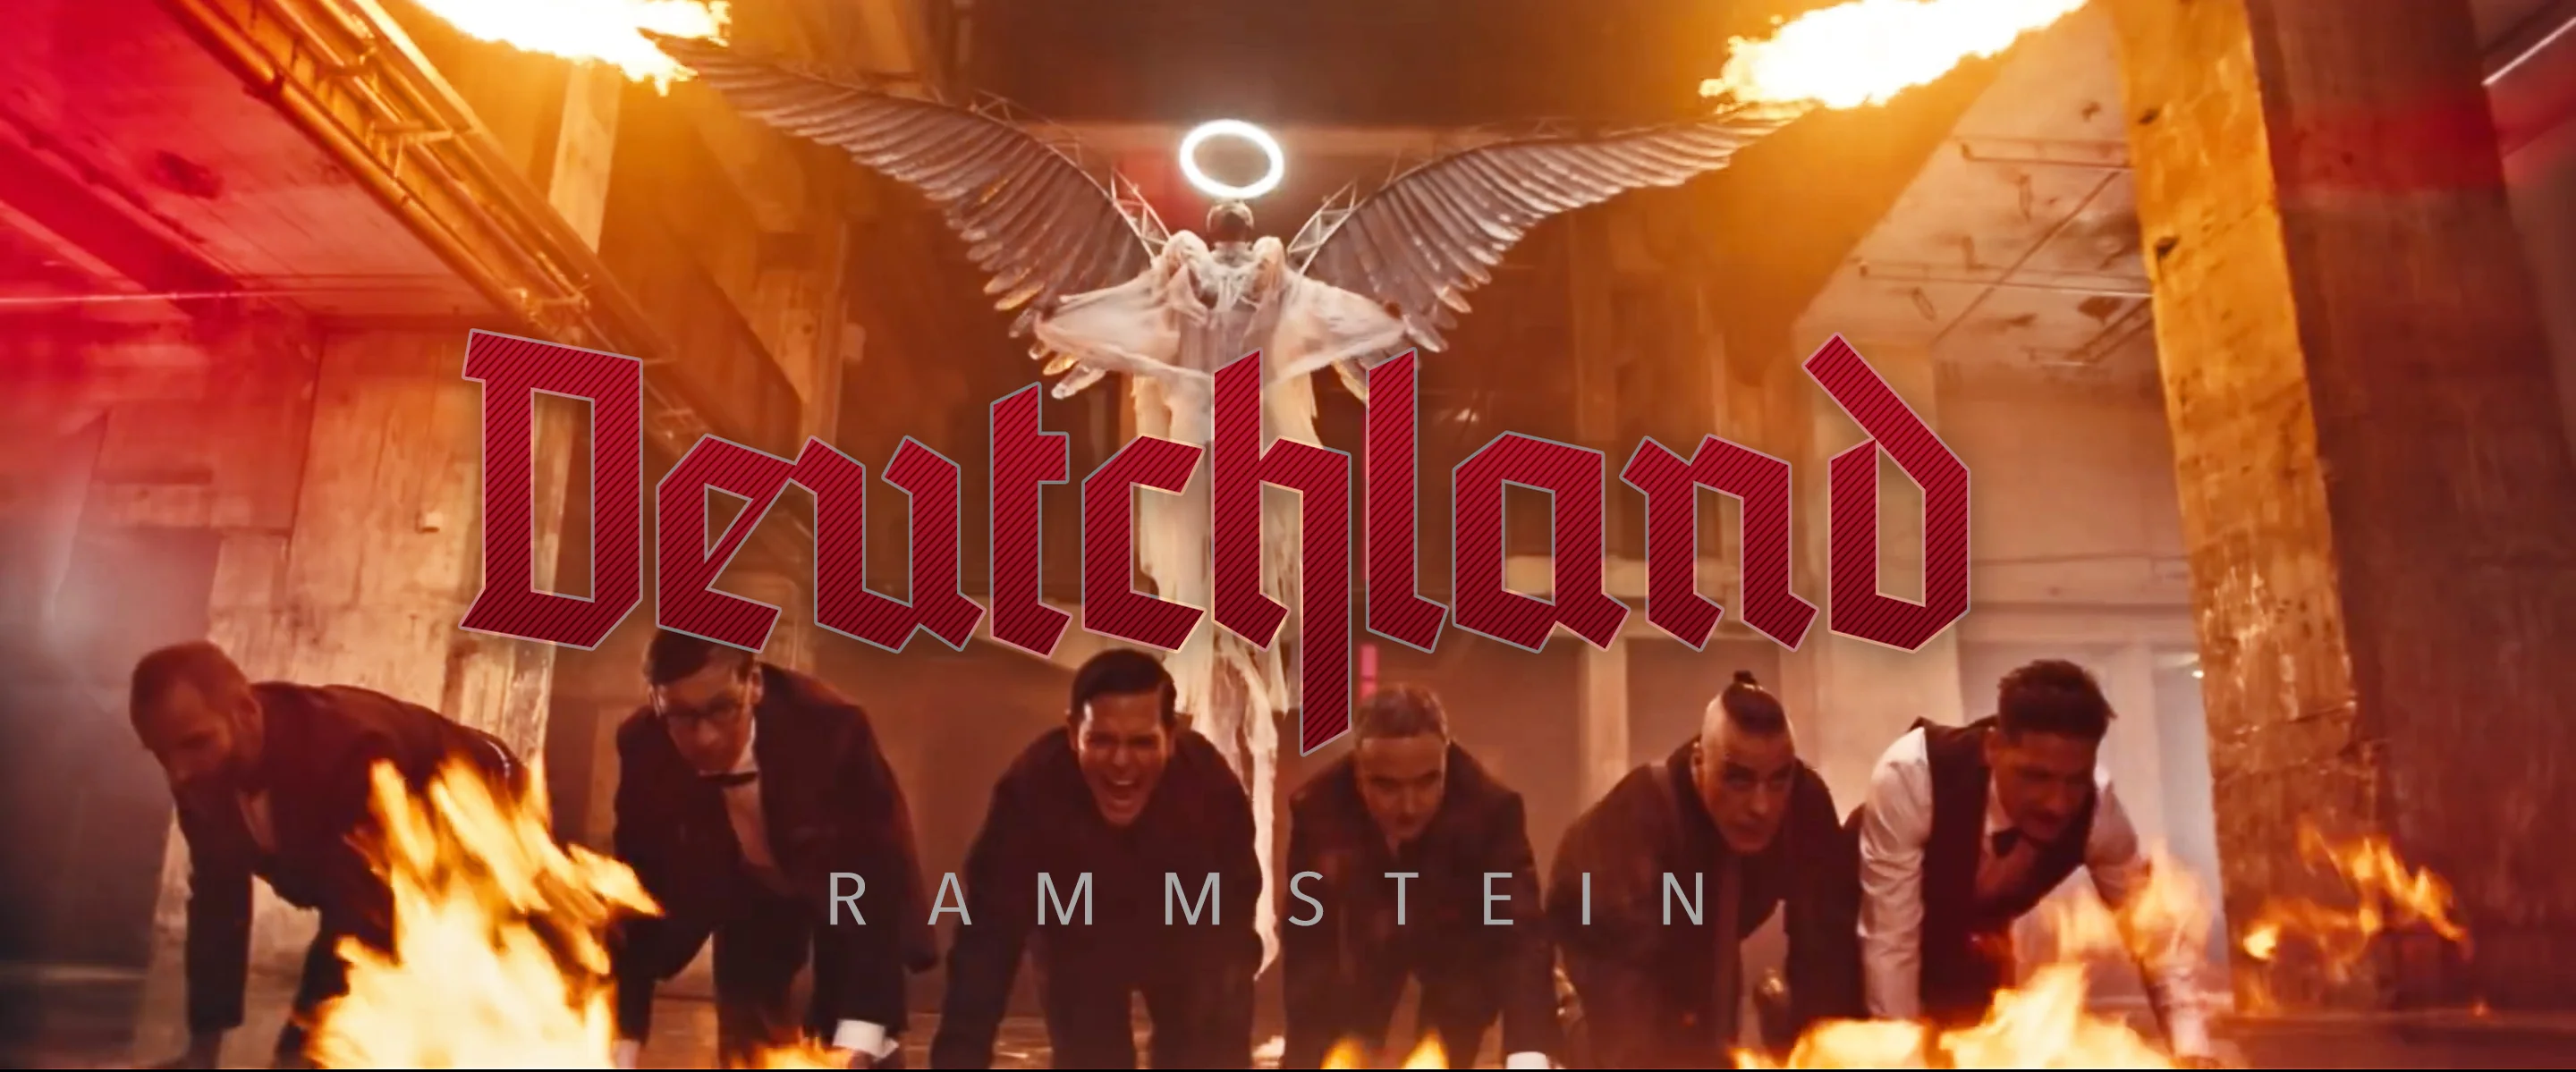 Rammstein - Rammstein (Official Video) 